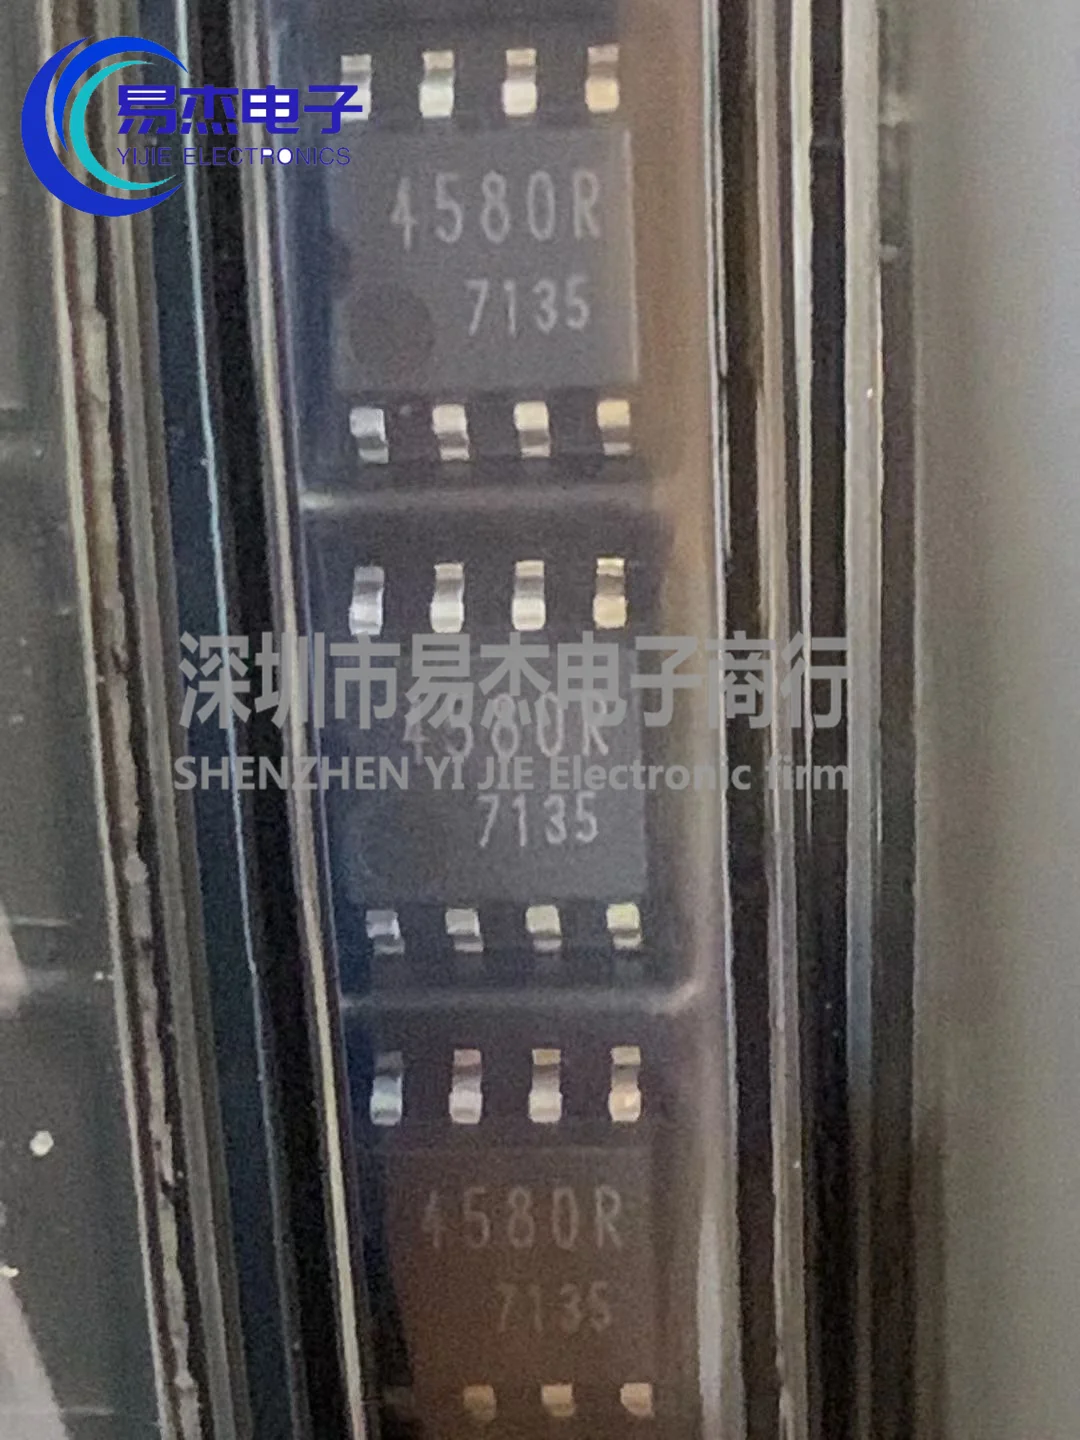 

10 шт., новая искусственная трафаретная печать 4580r sop-8, малошумный операционный усилитель IC, чип общего усилителя